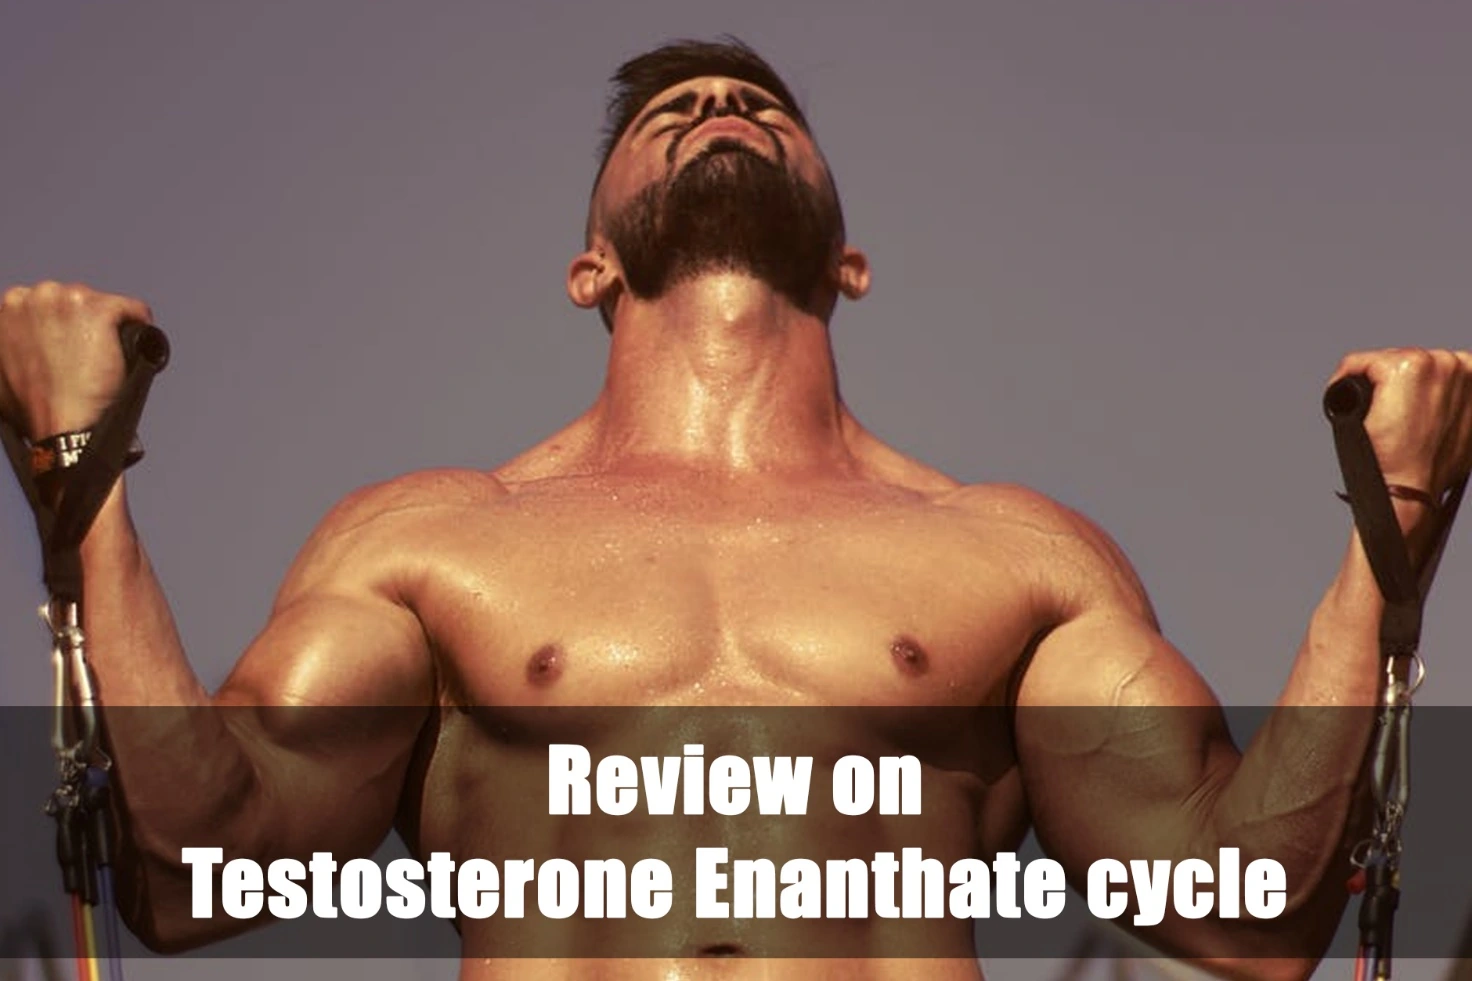 Revisione del ciclo di testosterone enantato